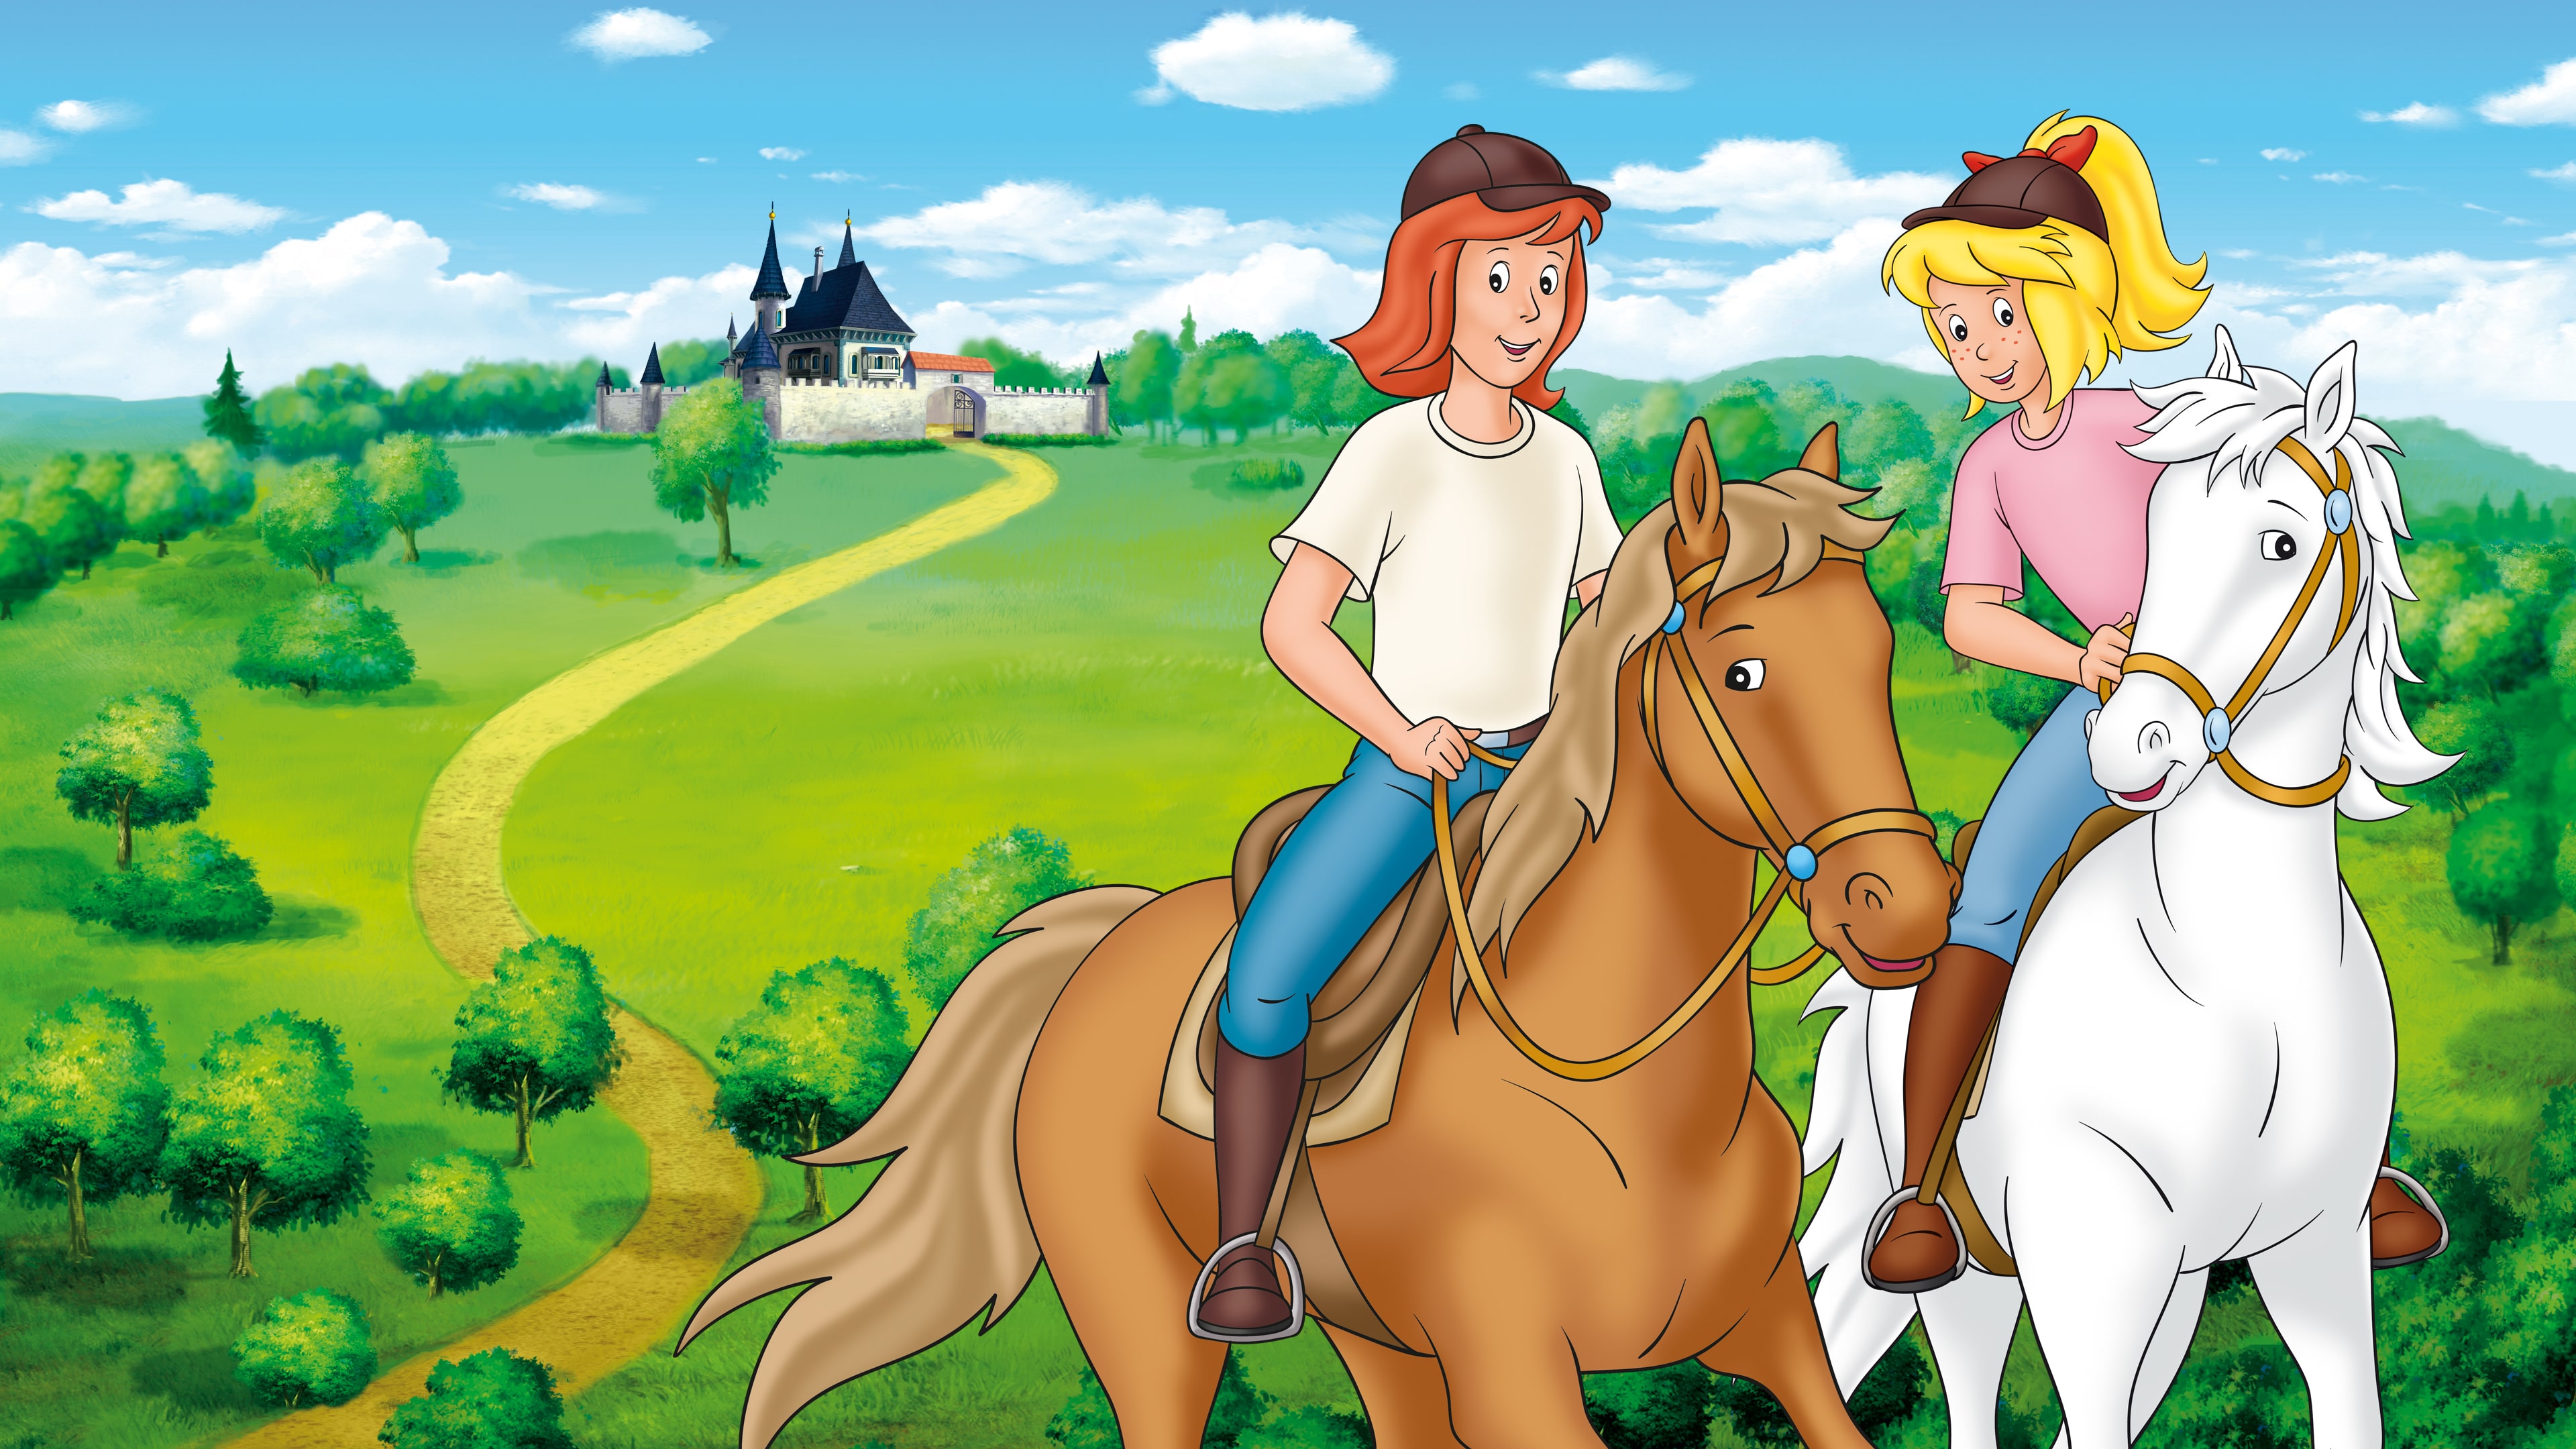 Bibi & Tina – New adventures with horses